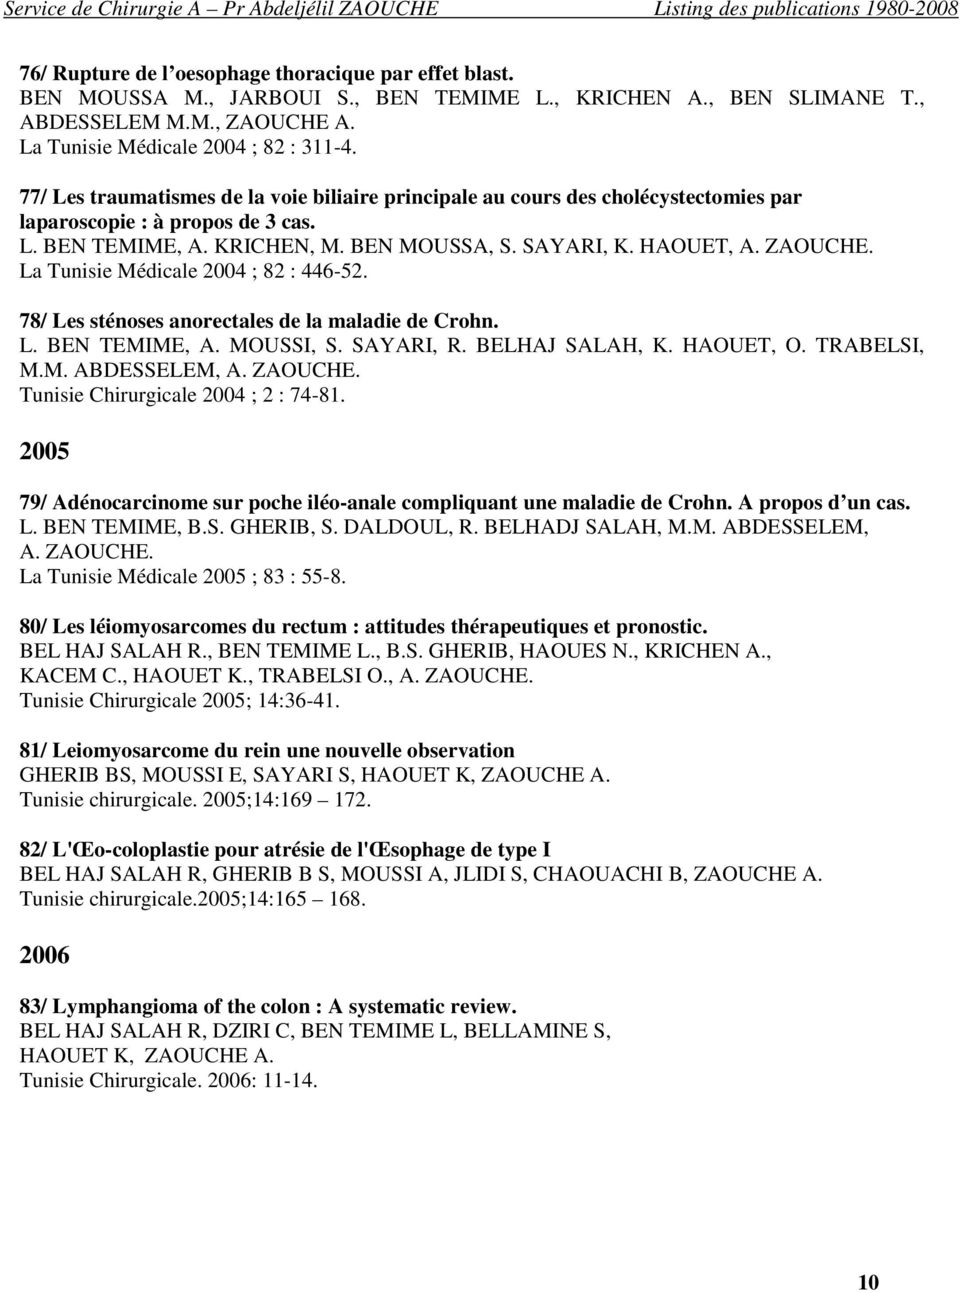 La Tunisie Médicale 2004 ; 82 : 446-52. 78/ Les sténoses anorectales de la maladie de Crohn. L. BEN TEMIME, A. MOUSSI, S. SAYARI, R. BELHAJ SALAH, K. HAOUET, O. TRABELSI, M.M. ABDESSELEM, A. ZAOUCHE.